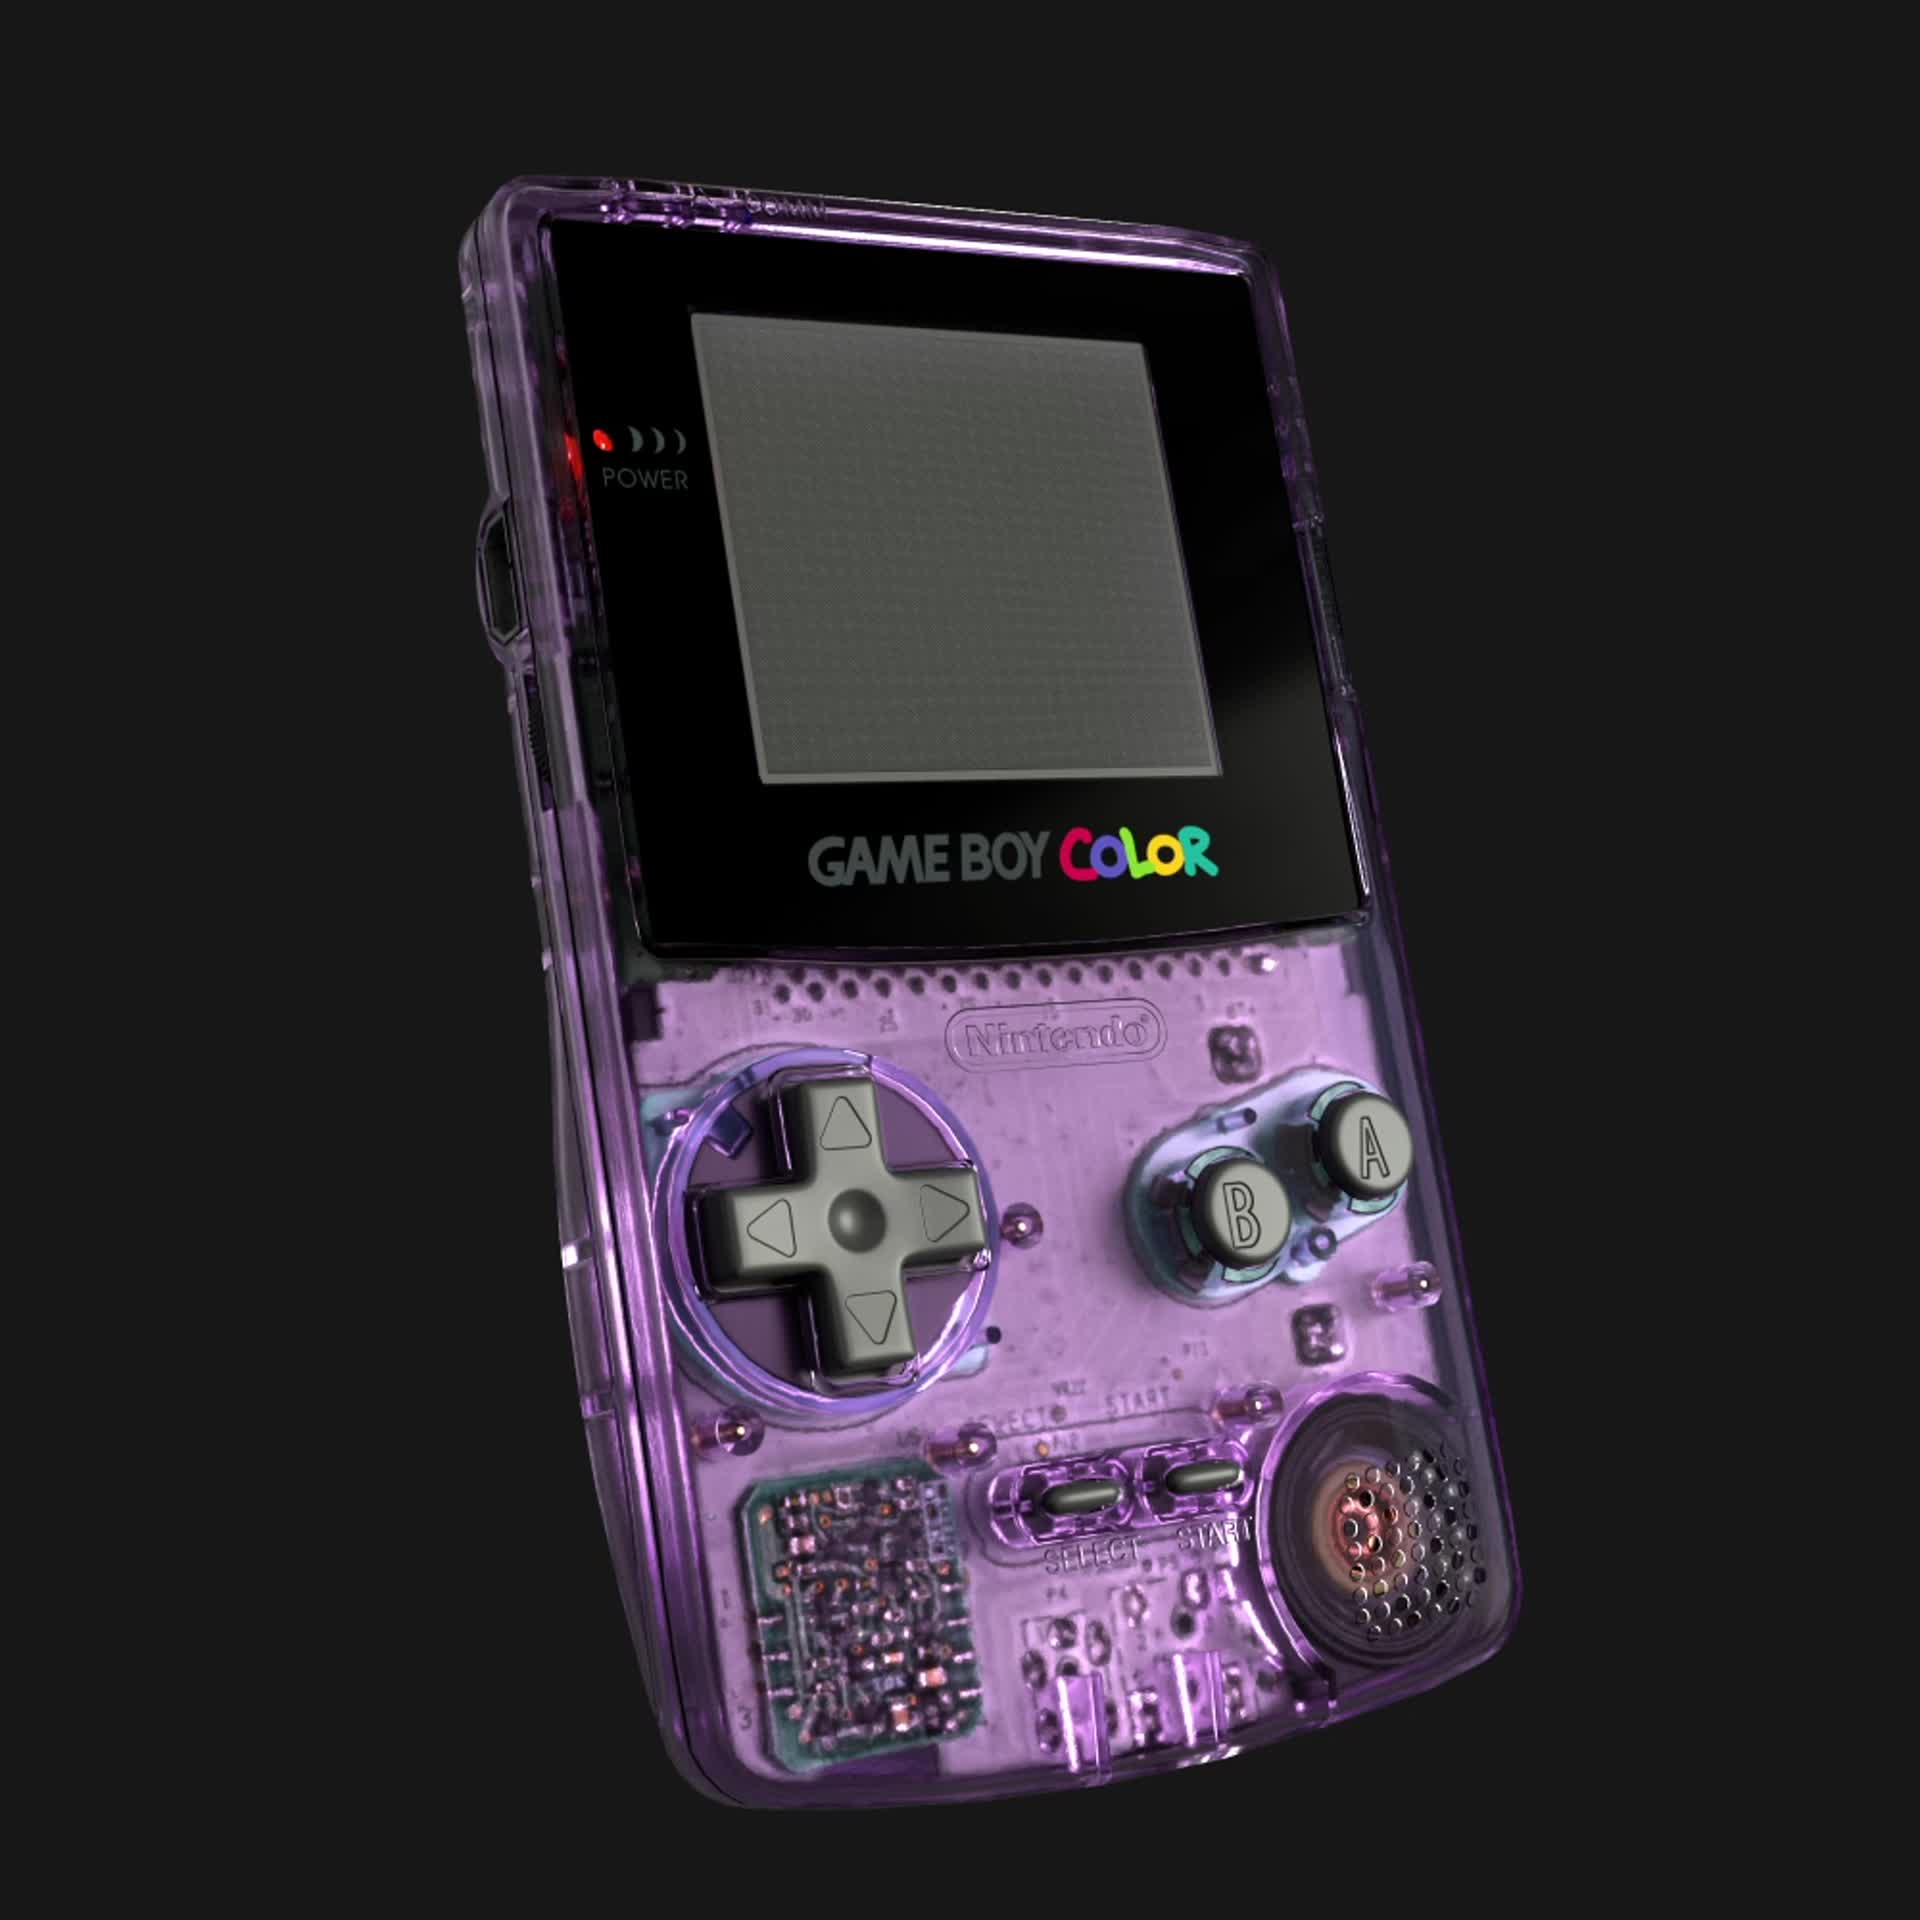 ArtStation - Nintendo Gameboy Color